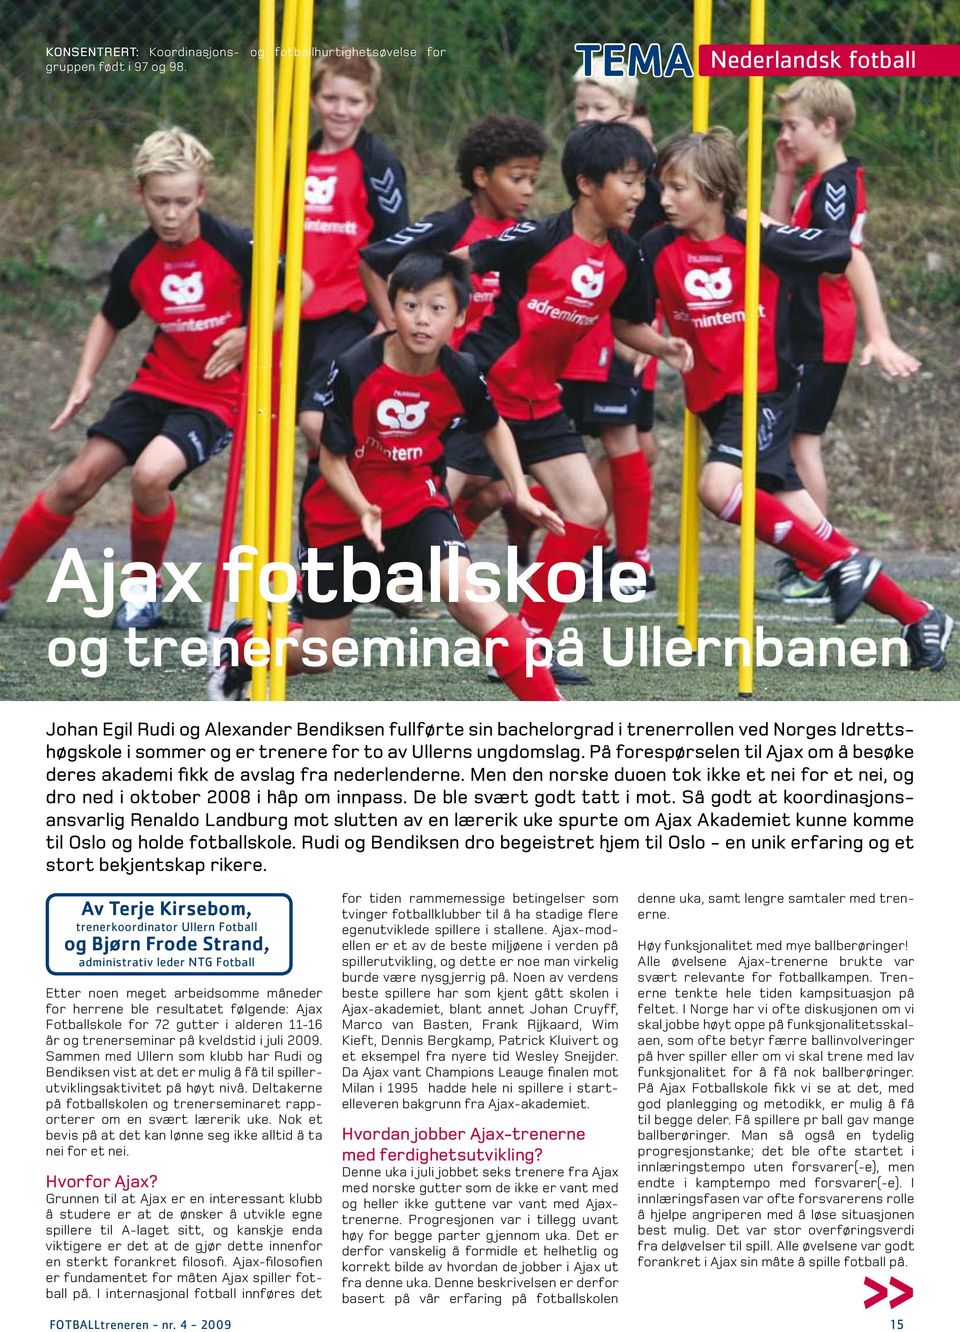 trenere for to av Ullerns ungdomslag. På forespørselen til Ajax om å besøke deres akademi fikk de avslag fra nederlenderne.